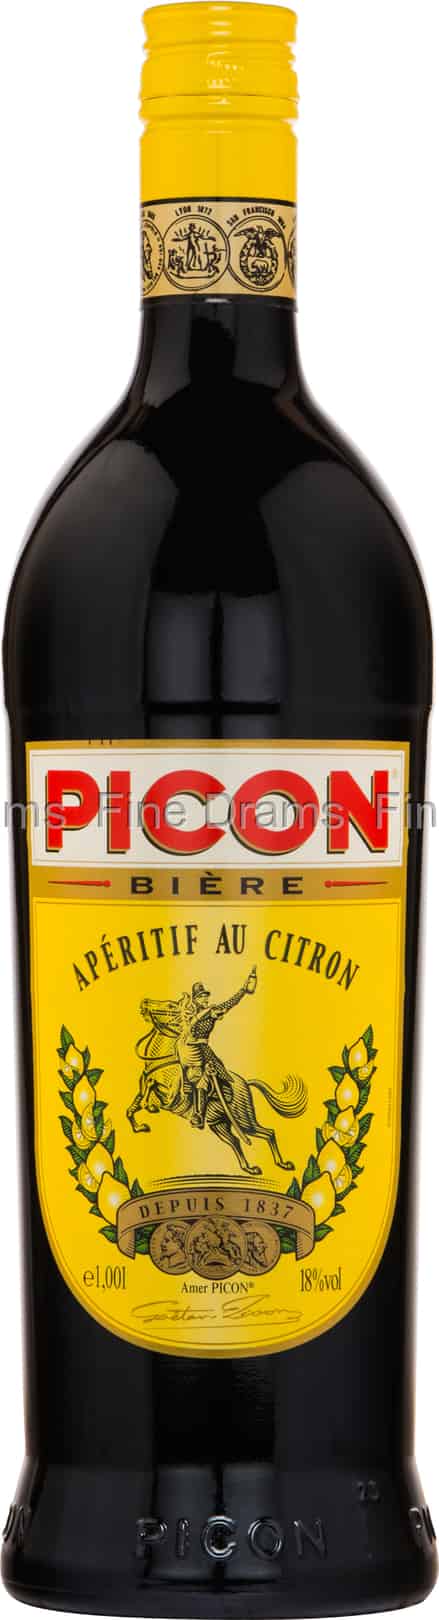 Picon Biére Apéritif au Citron (1 Liter)